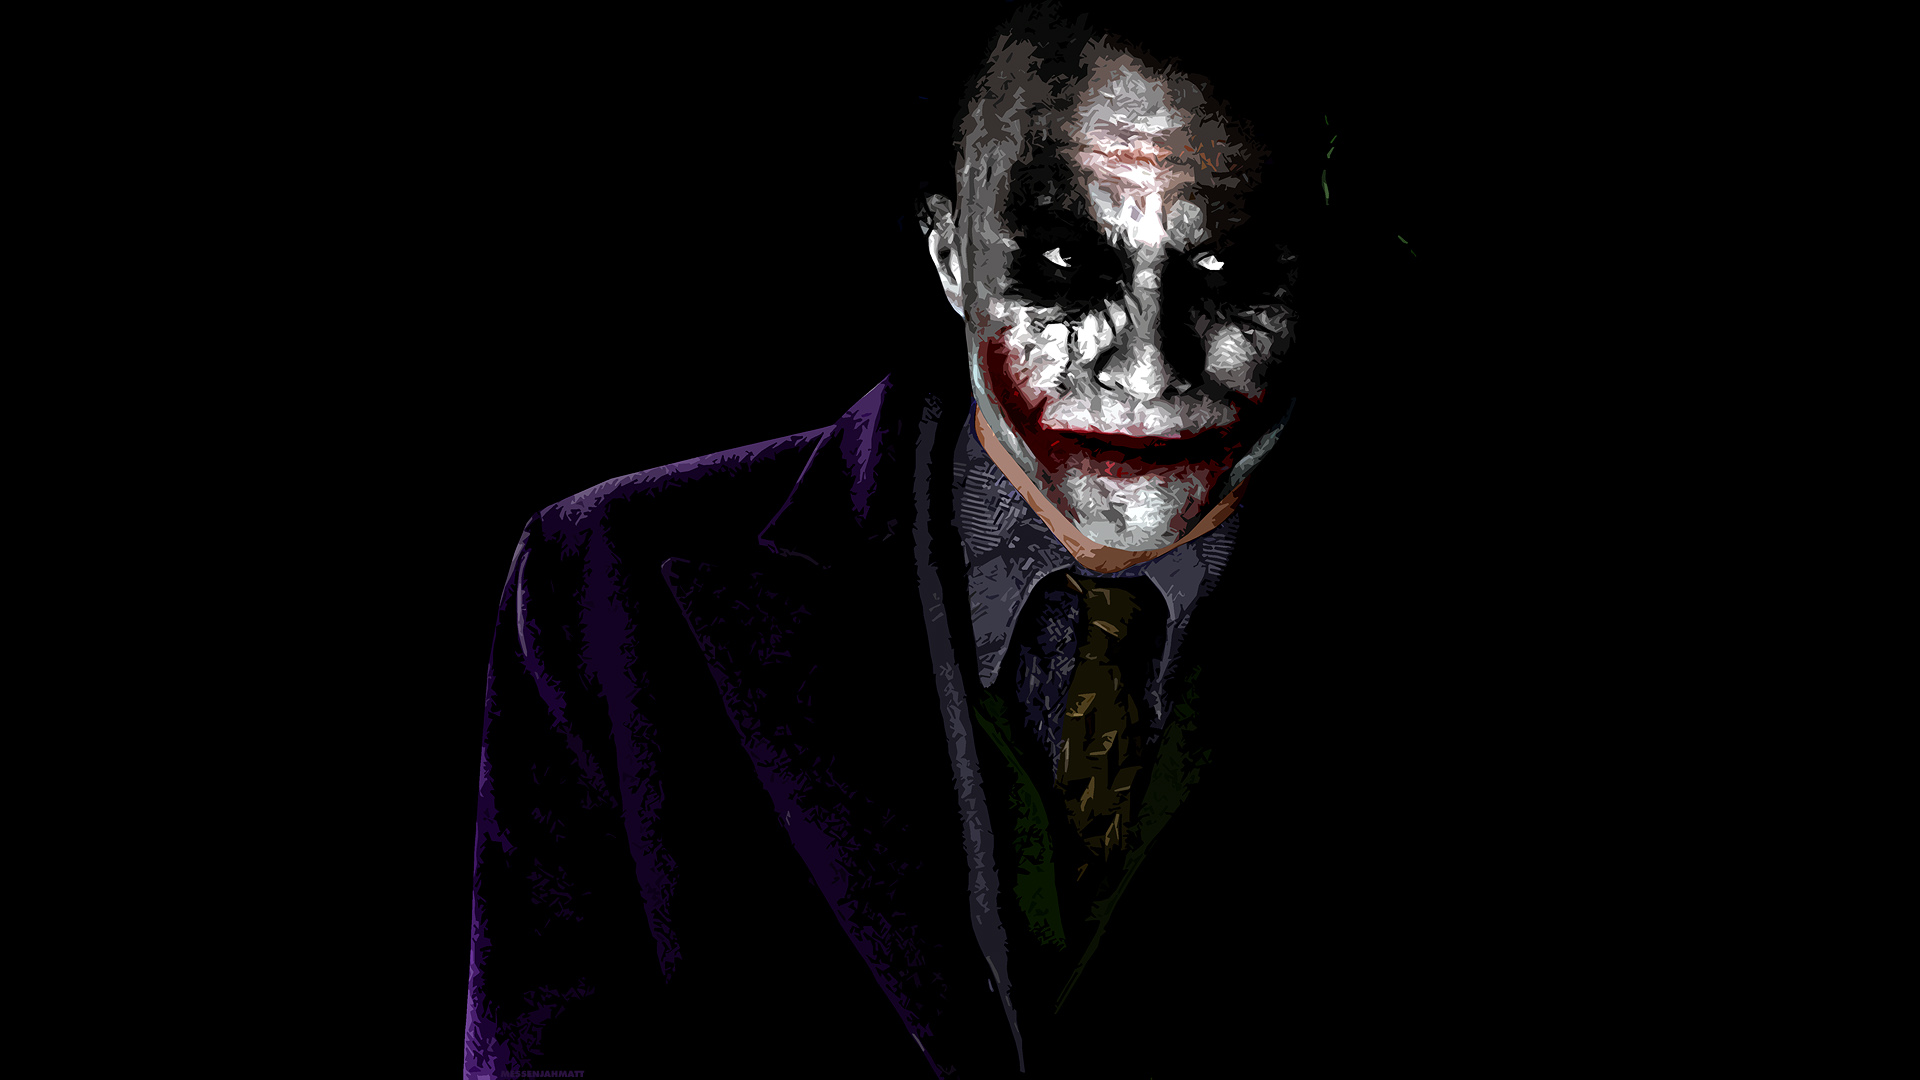 joker - The Joker Wallpaper (28092865) - Fanpop